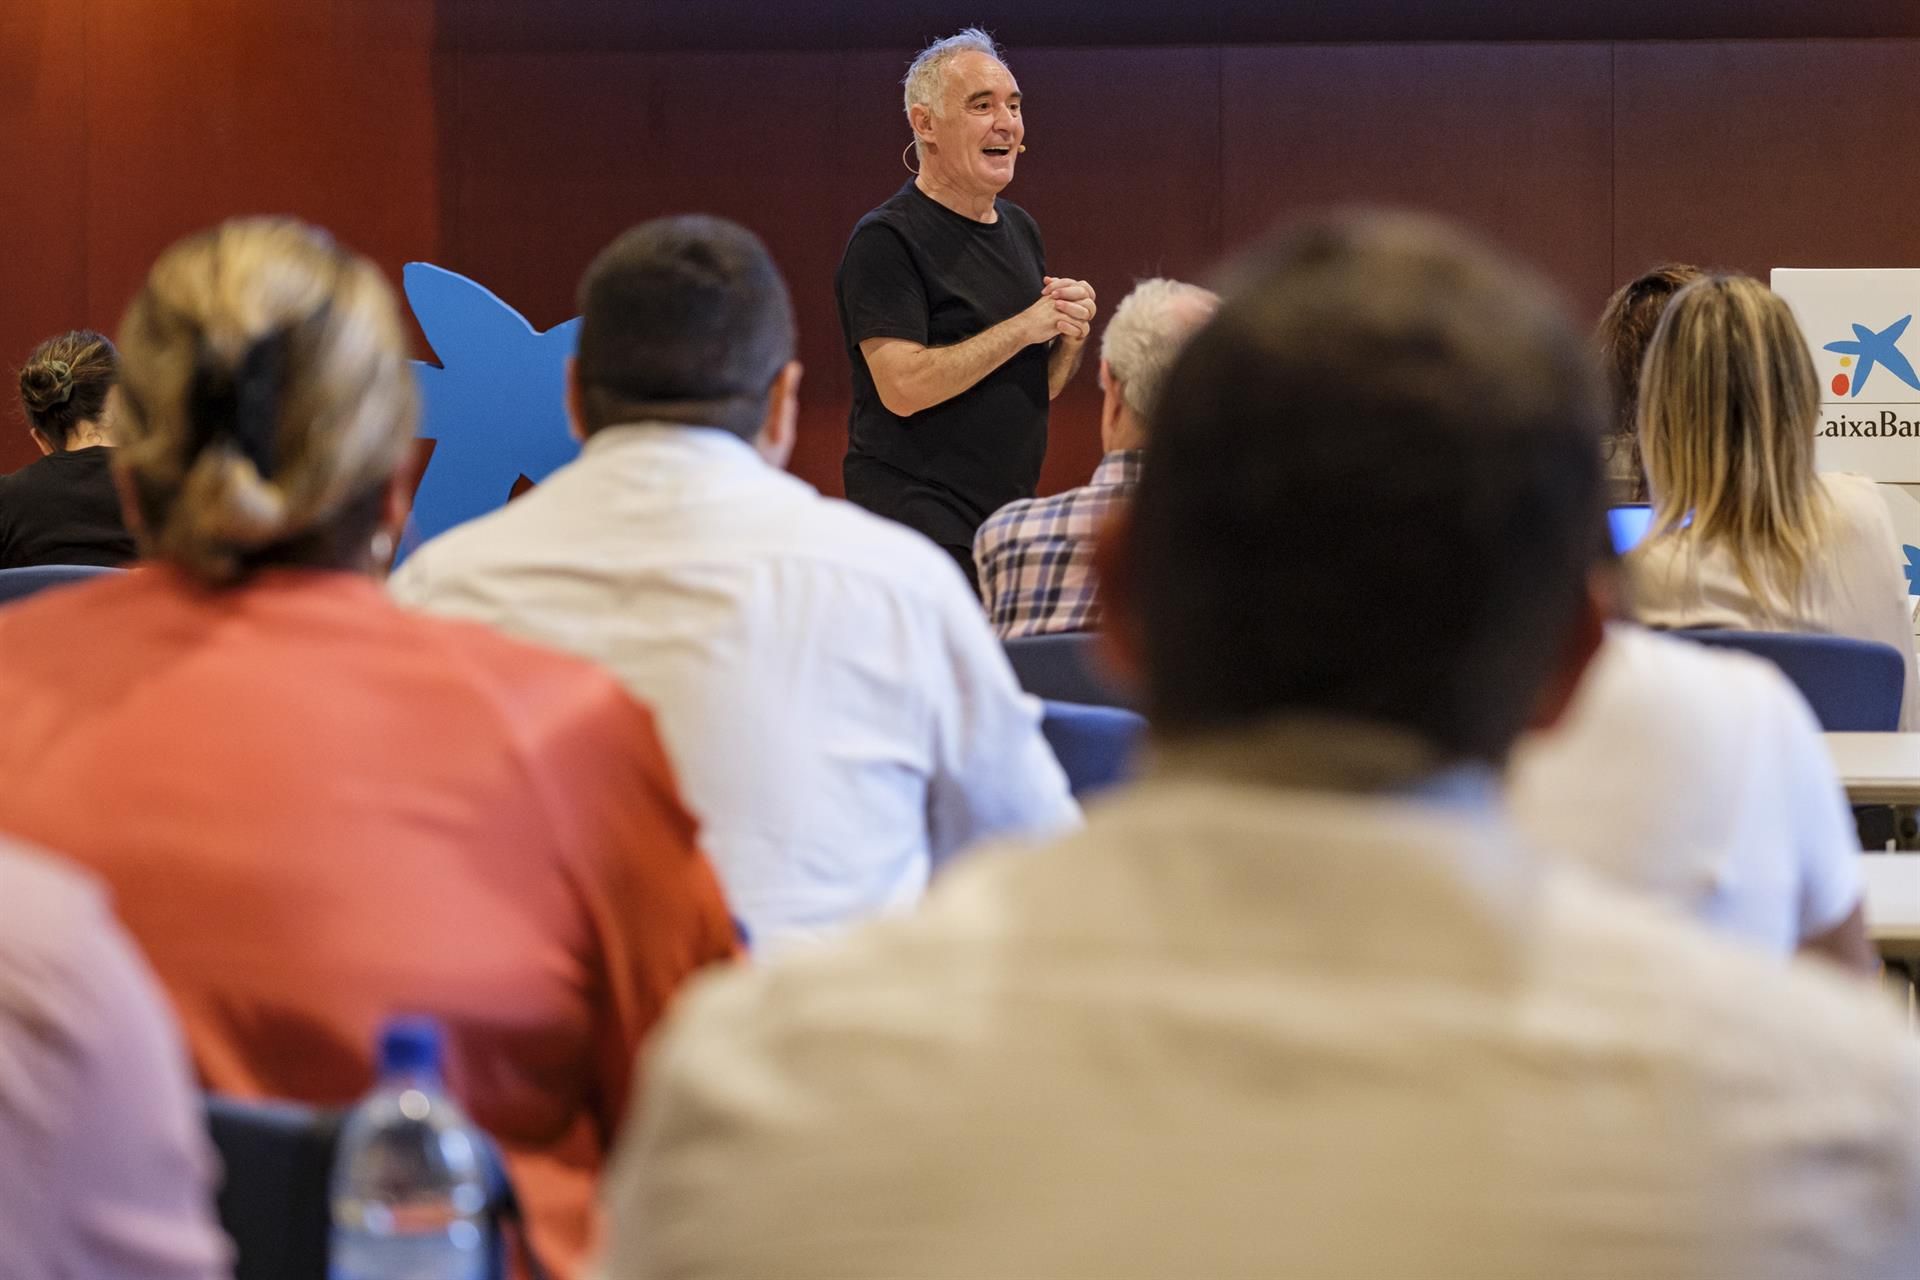 El creador del restaurante El Bulli, el cocinero Ferran Adrià, inauguró este martes en Gran Canaria un curso de gestión para hosteleros de la mano de CaixaBank. EFE/Ángel Medina G.